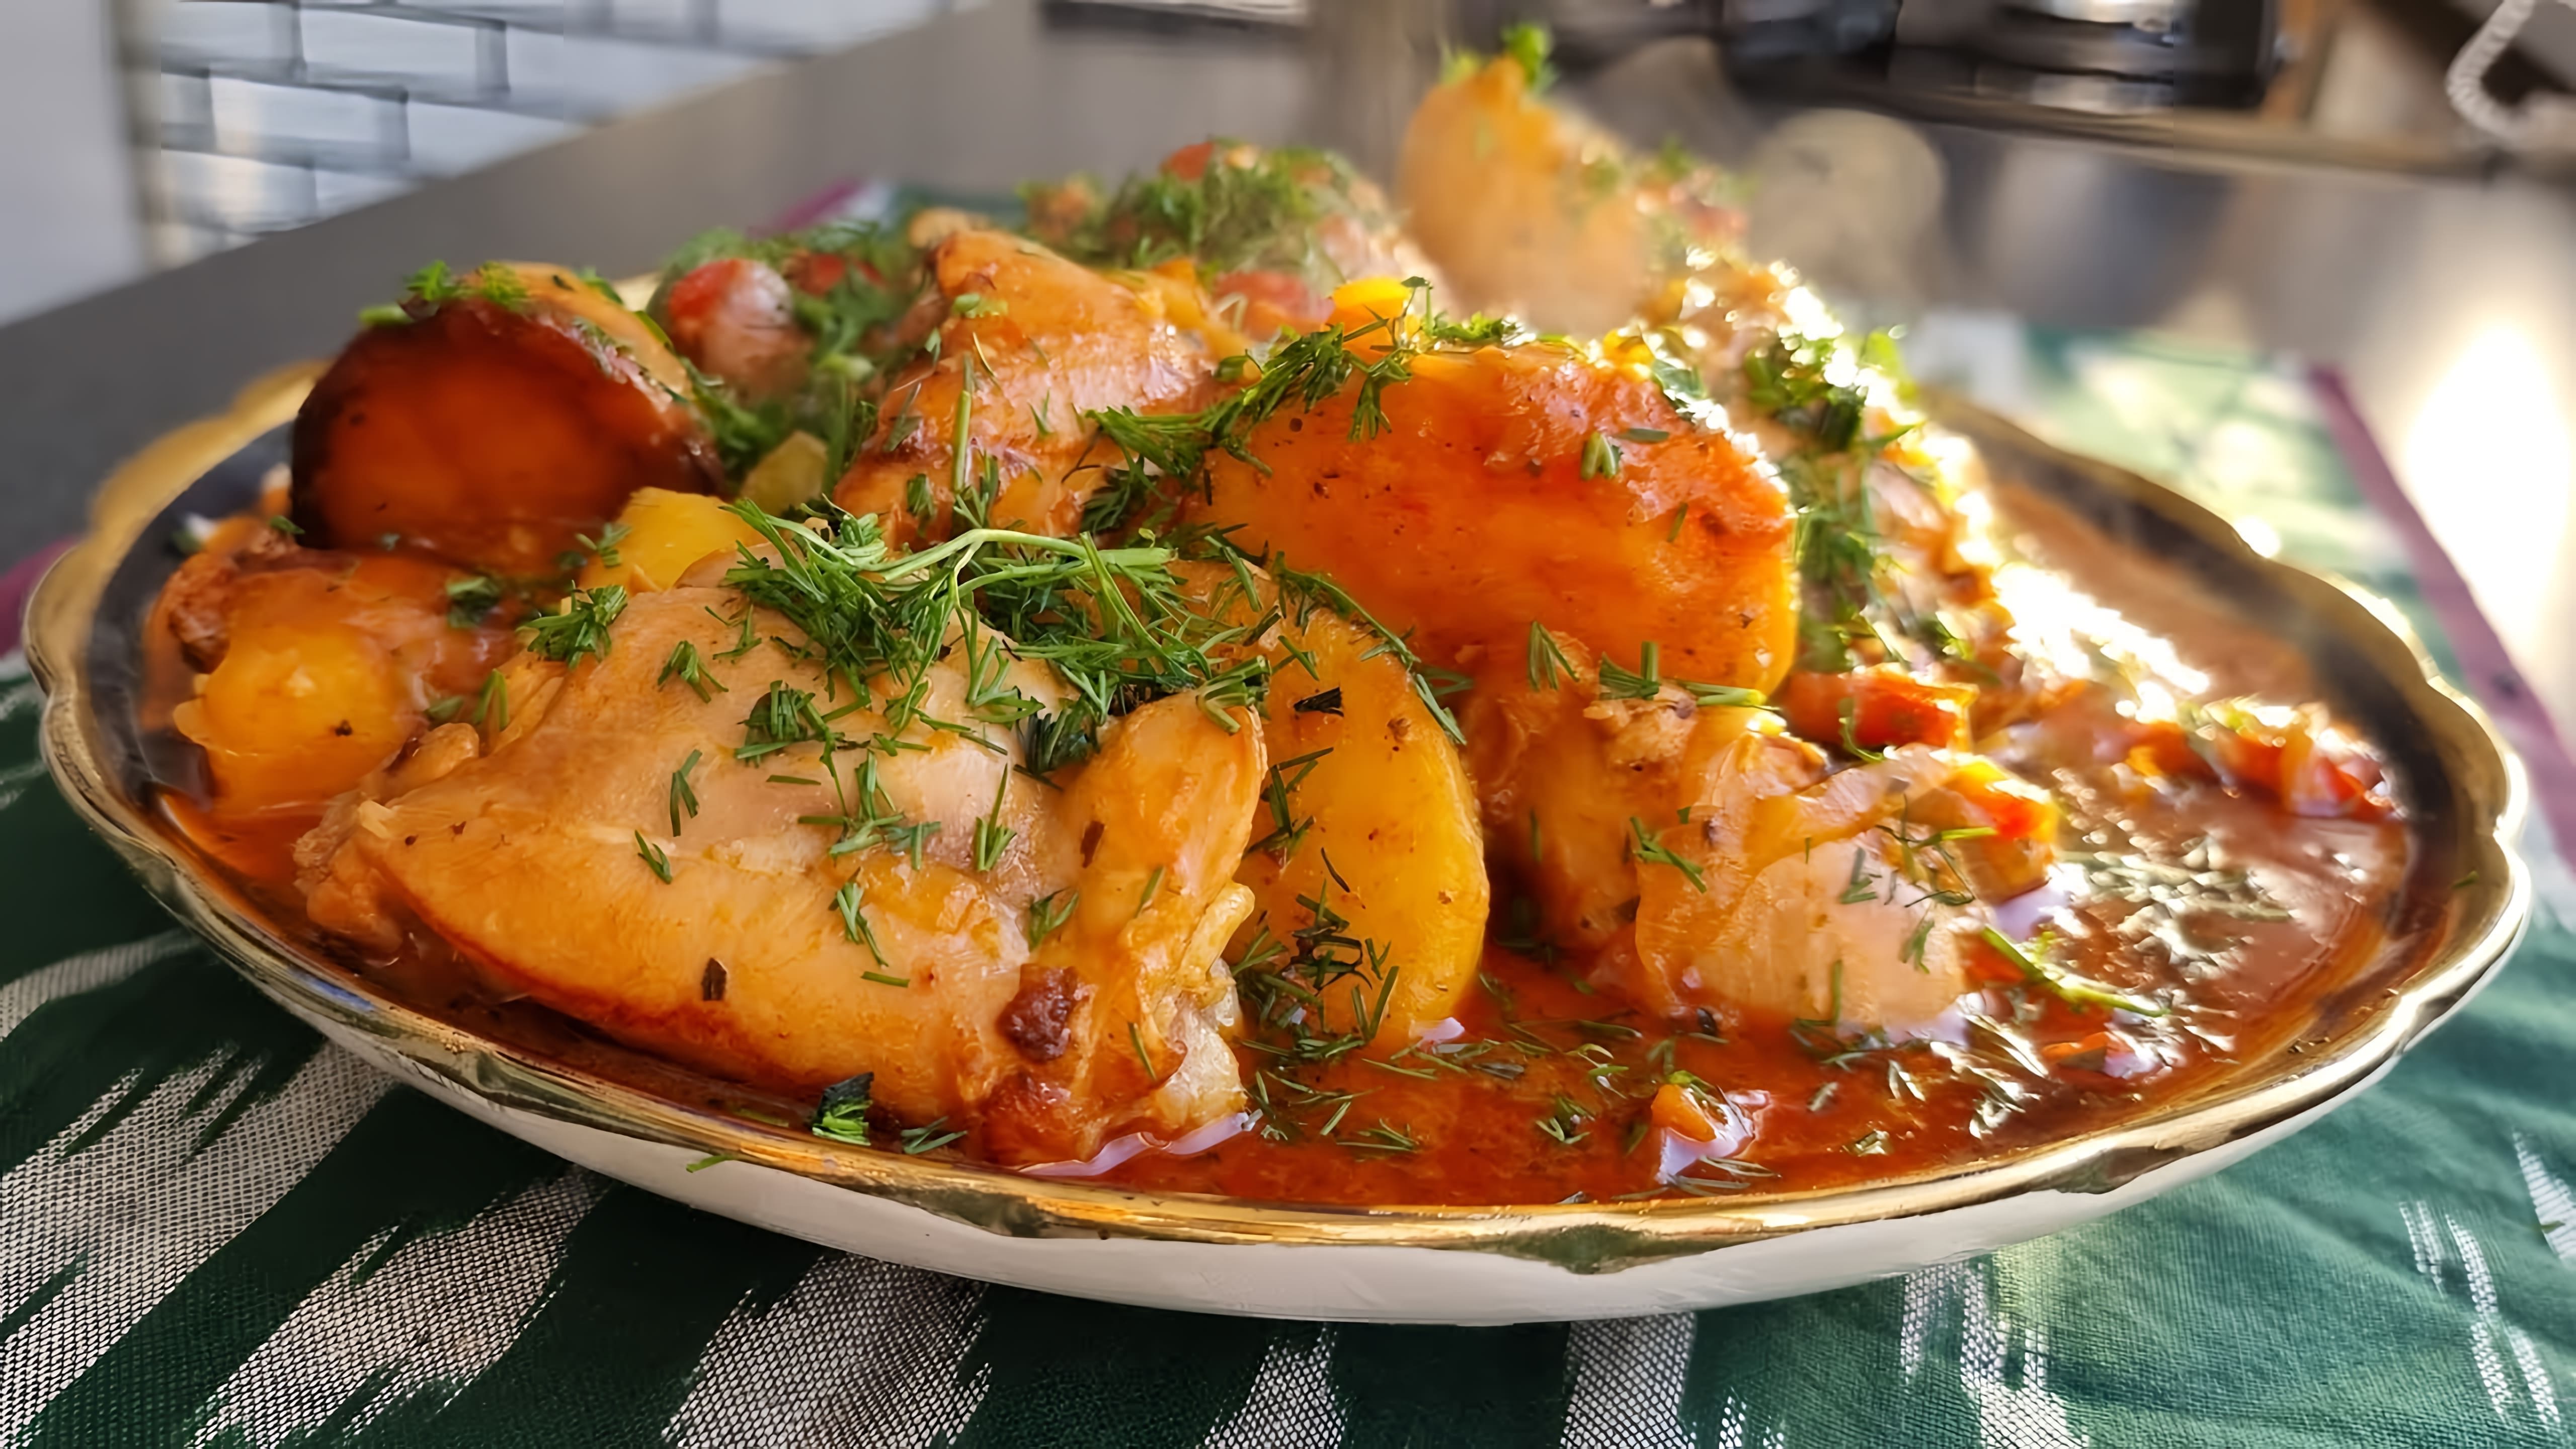 В этом видео демонстрируется рецепт приготовления простого и вкусного ужина - жаркого с курицей и картошкой